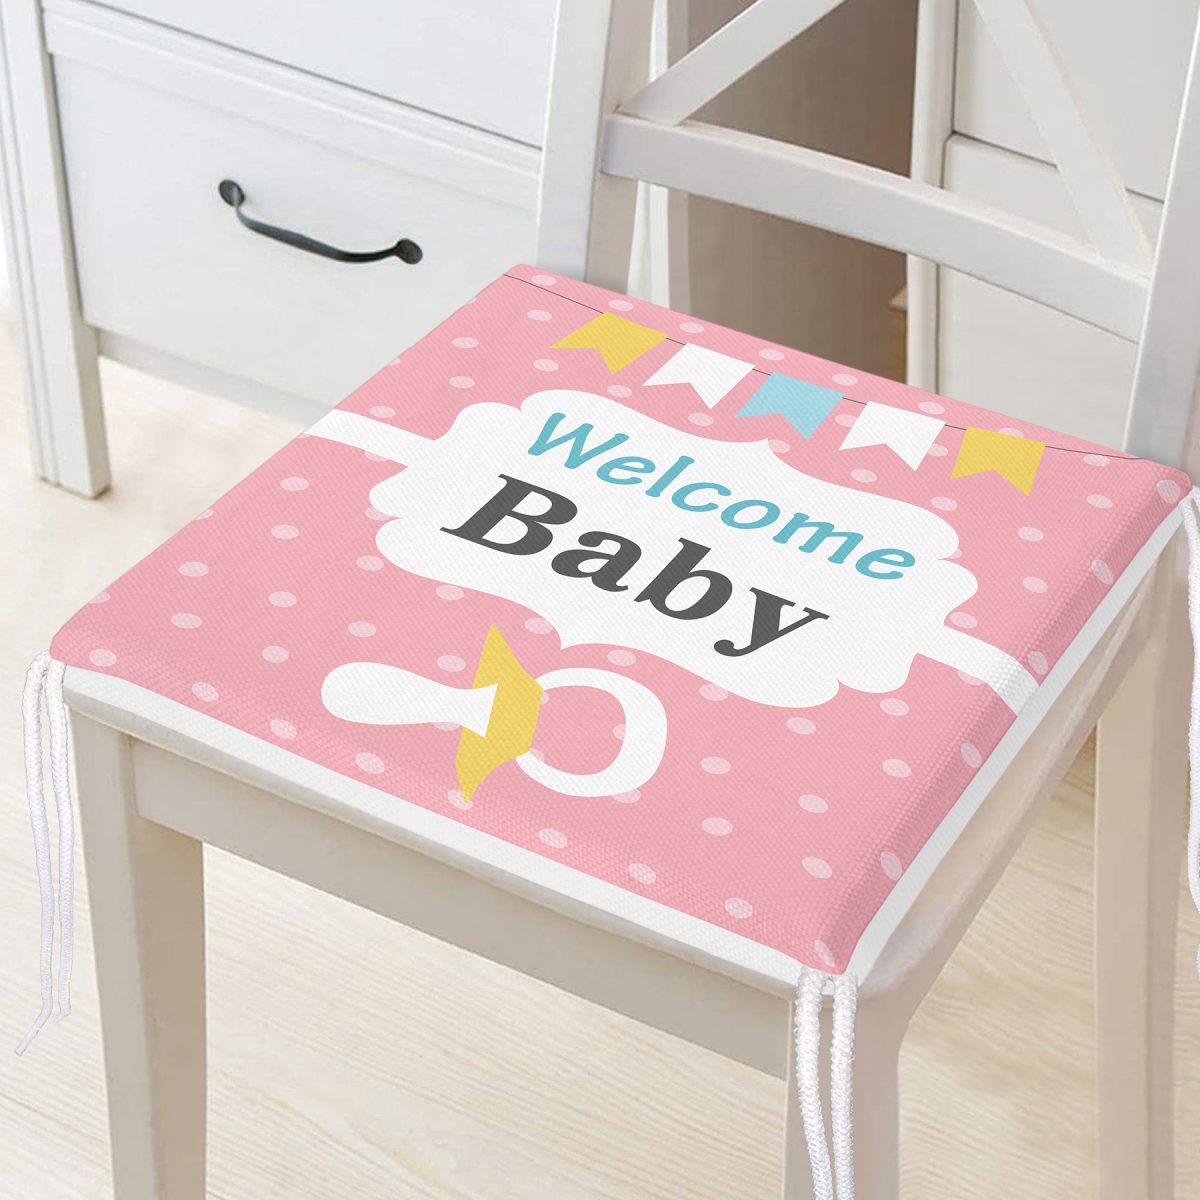 Pembe Zemin Baby Shower Temalı Özel Tasarımlı Dijital Baskılı Çocuk Odası Fermuarlı Sandalye Minderi Realhomes